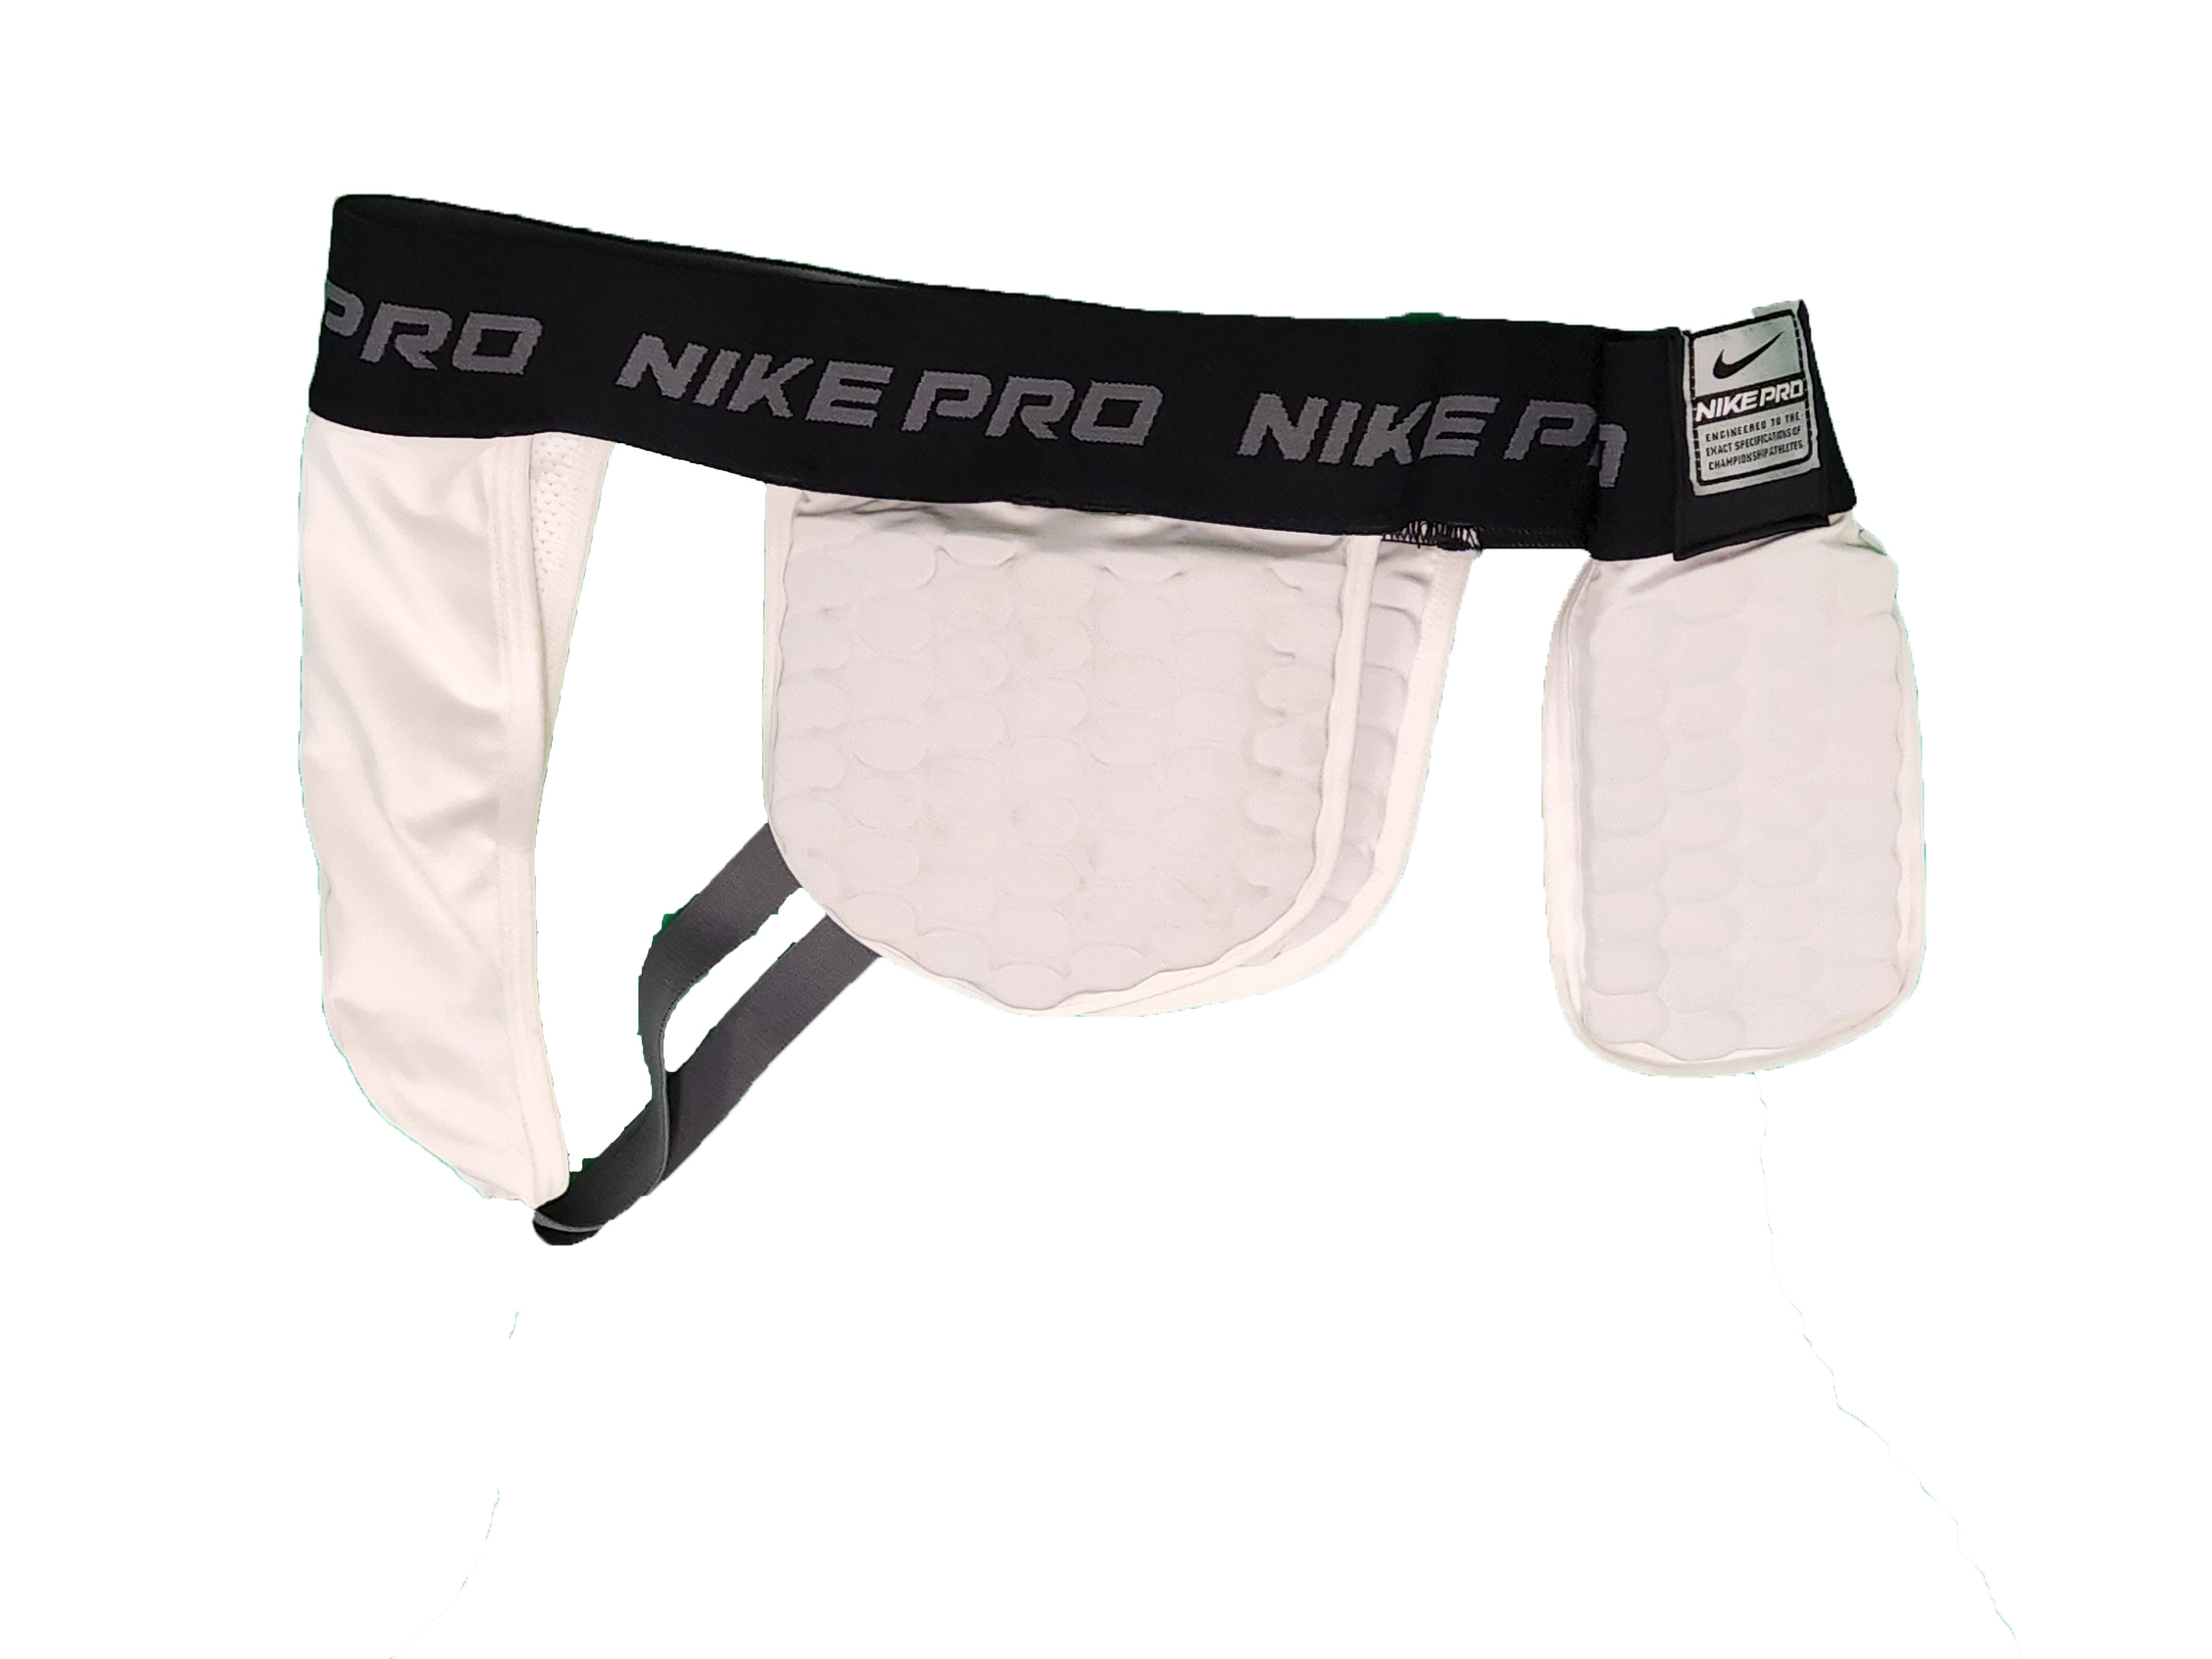 White New Men's Nike Pro Combat Compression